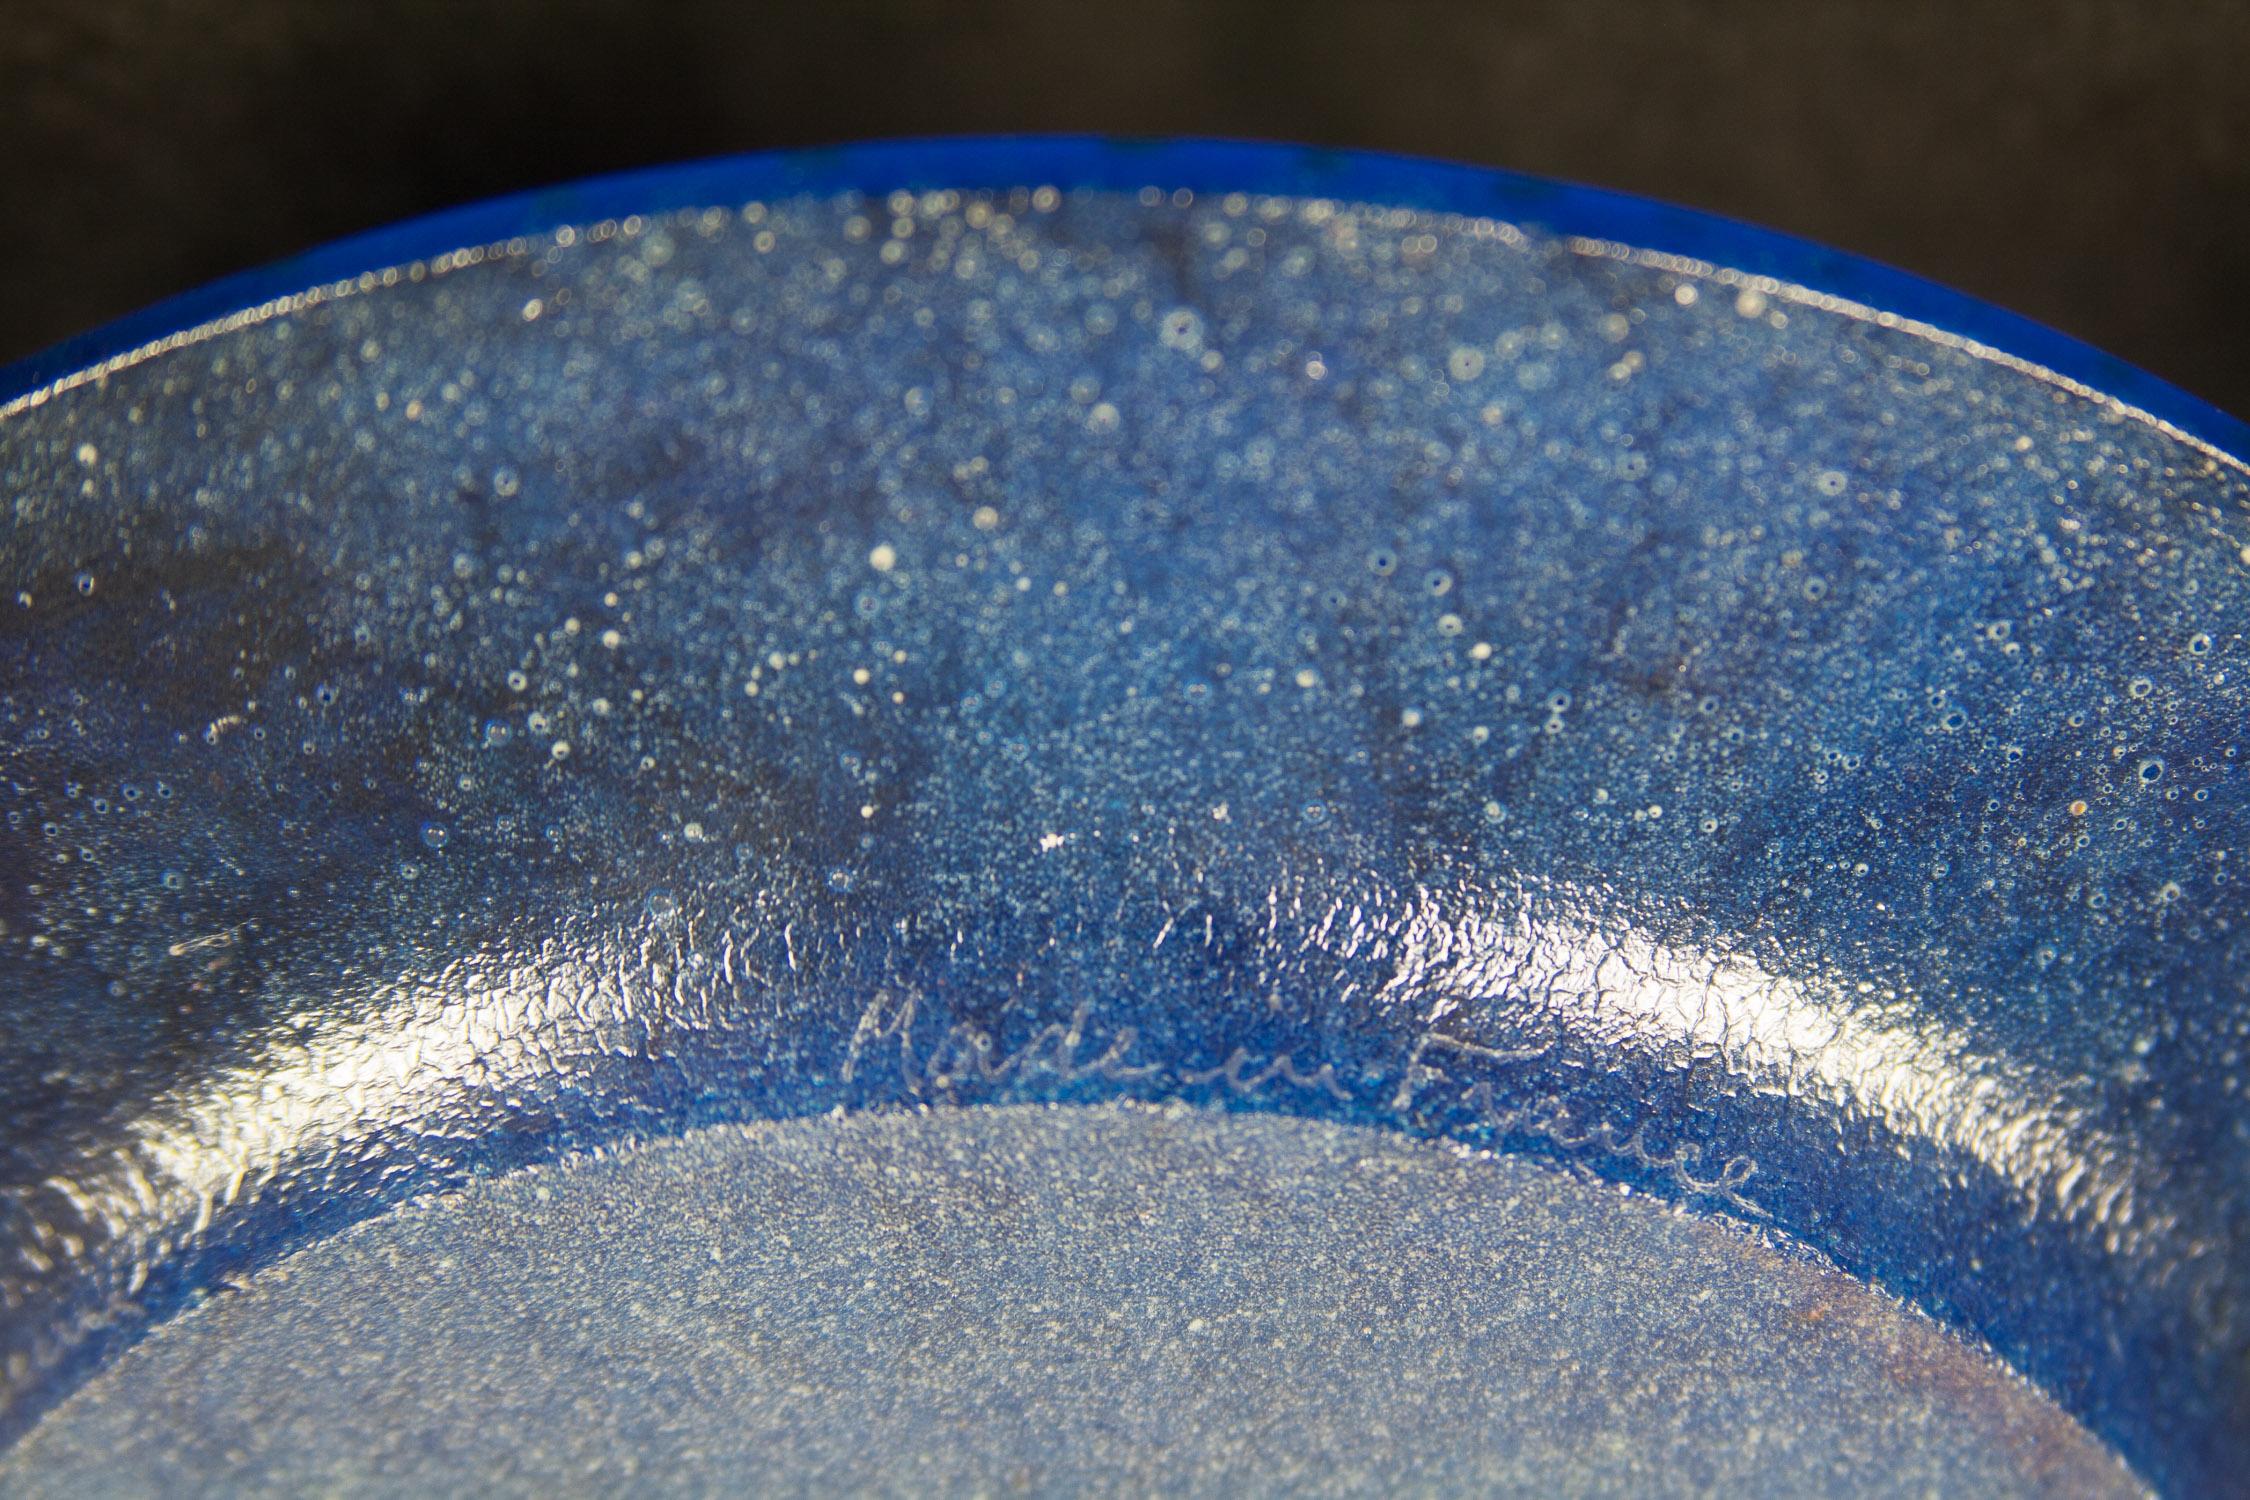  Geschmolzene Glasplatte....Triomphale ..... Blau und Gold von Salvador Dali
 Daum-Teller in limitierter Auflage aus blauem Pate-de-Verre-Strukturglas mit vergoldeten Highlights   Hergestellt in Frankreich 1970.  10,5 Zoll Durchmesser. Limitierte